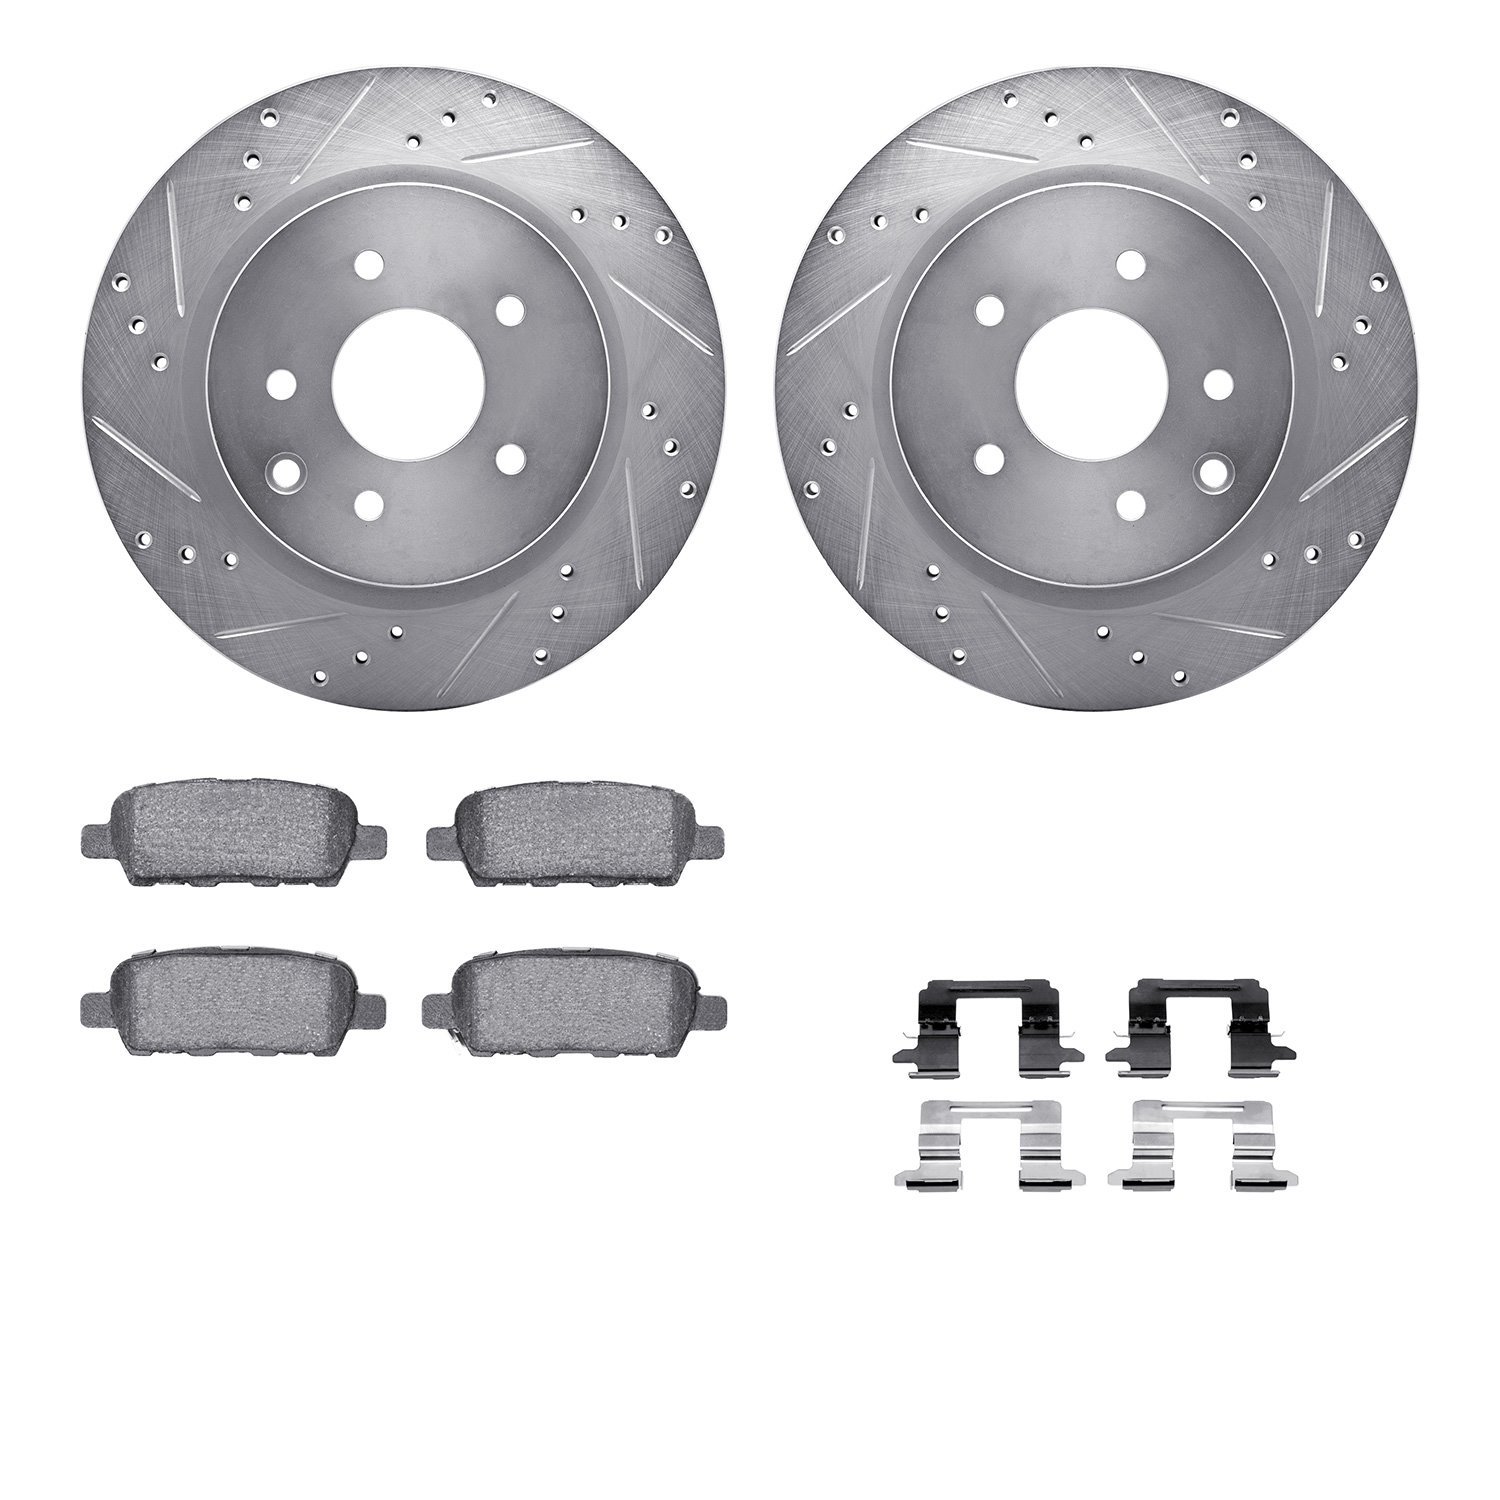 7612-67003 Drilled/Slotted Brake Rotors w/5000 Euro Ceramic Brake Pads Kit & Hardware [Silver], 2005-2021 Infiniti/Nissan, Posit